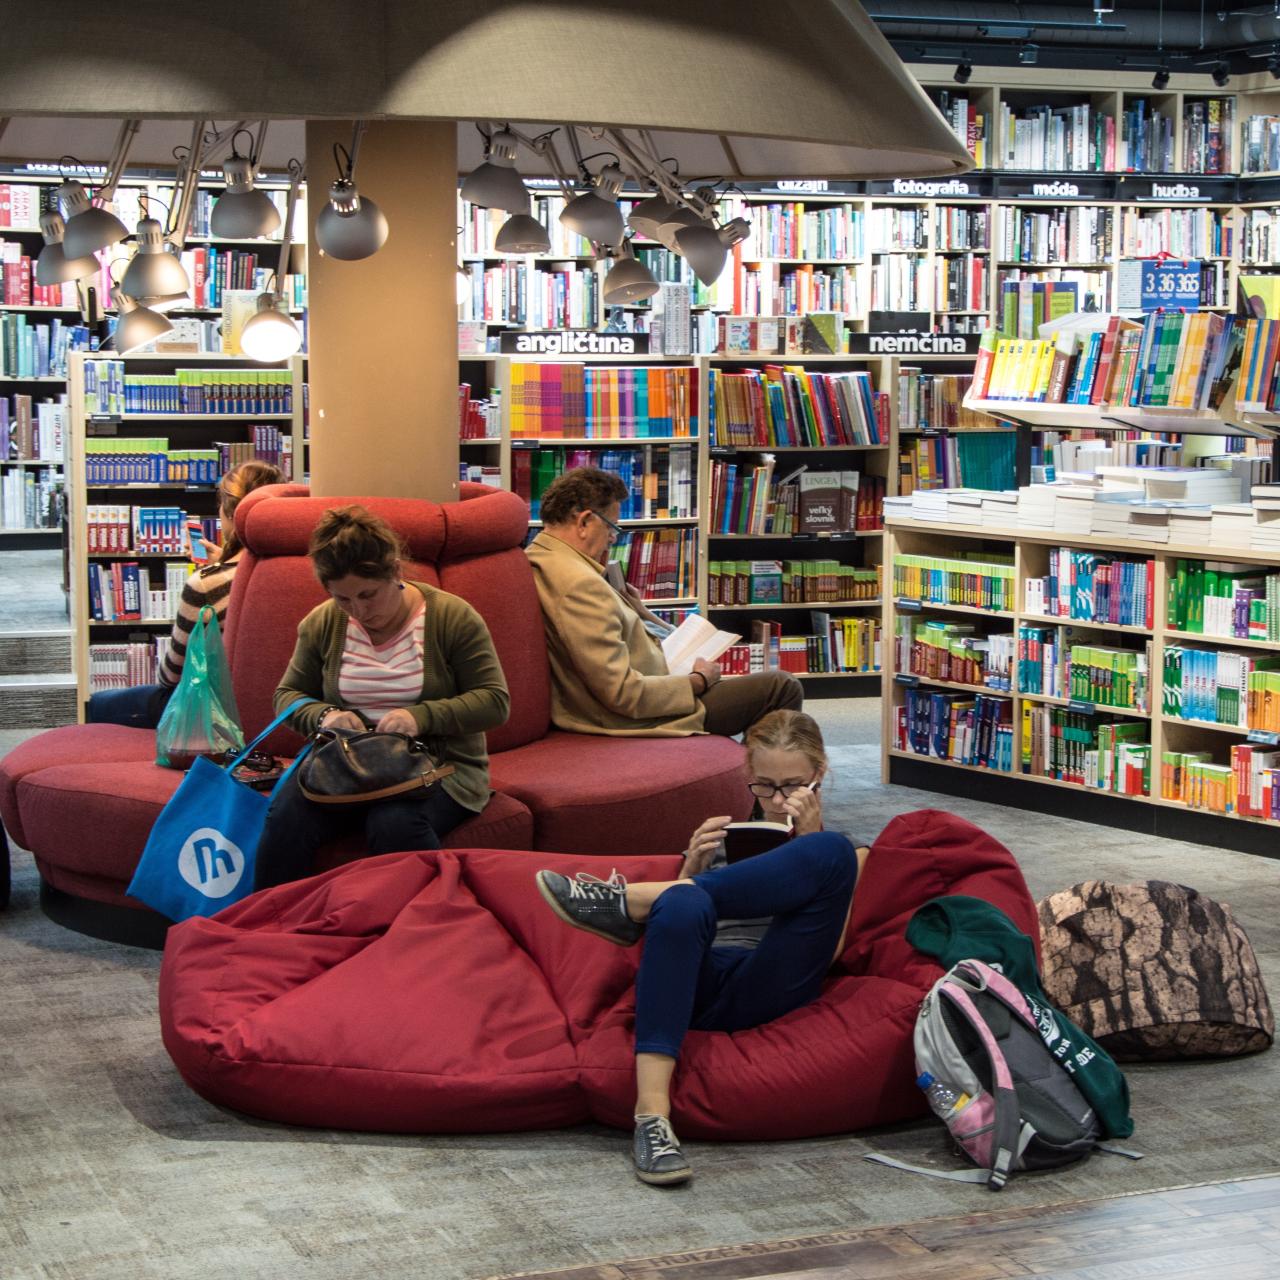 Menschen lesend in einer Bibliothek